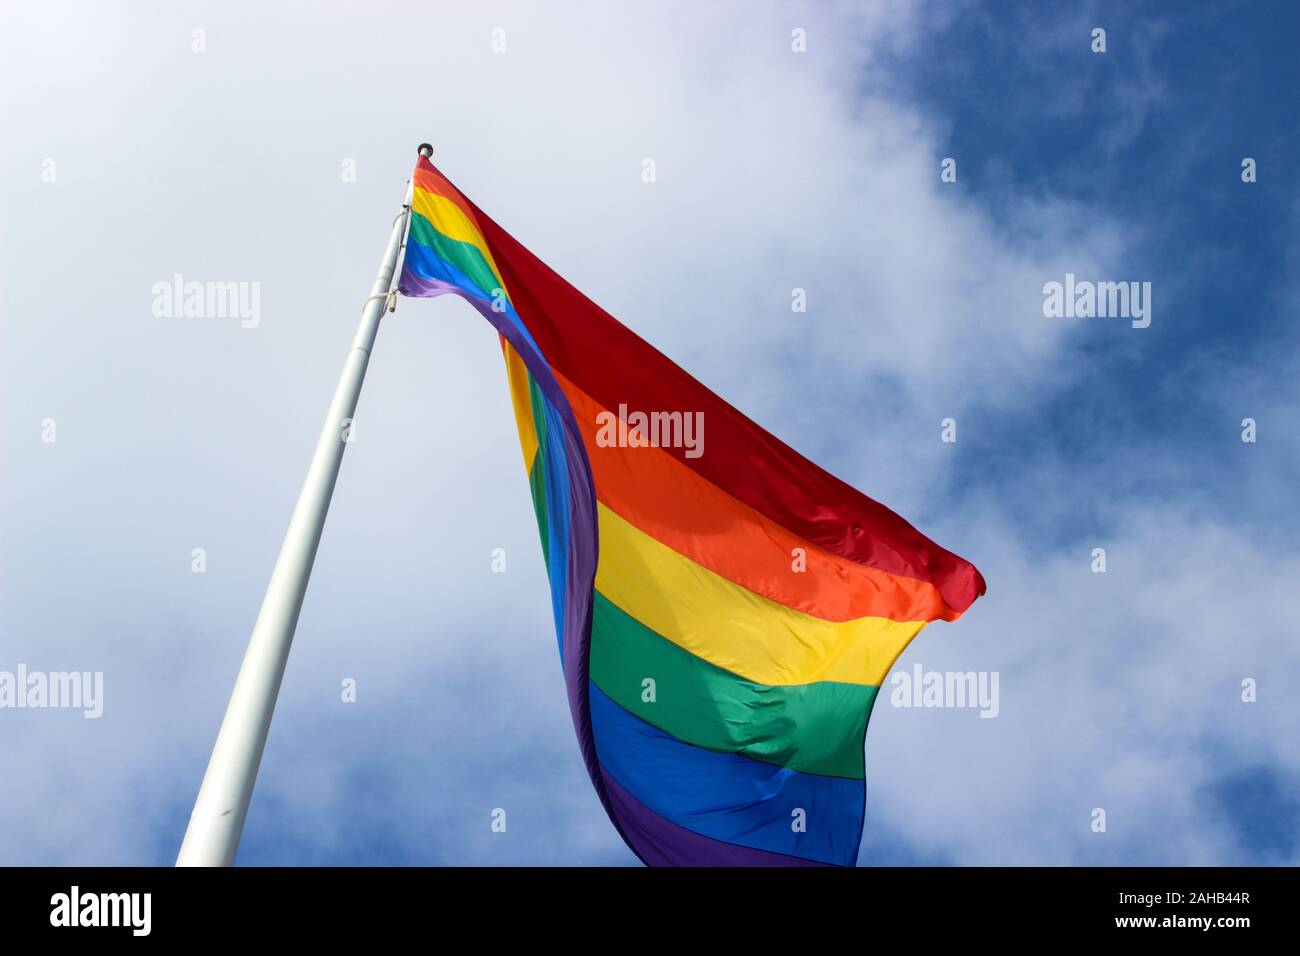 La bandera del arco iris en el mástil. Ángulo de visión baja. Distrito Castro de San Francisco, Estados Unidos de América. Foto de stock